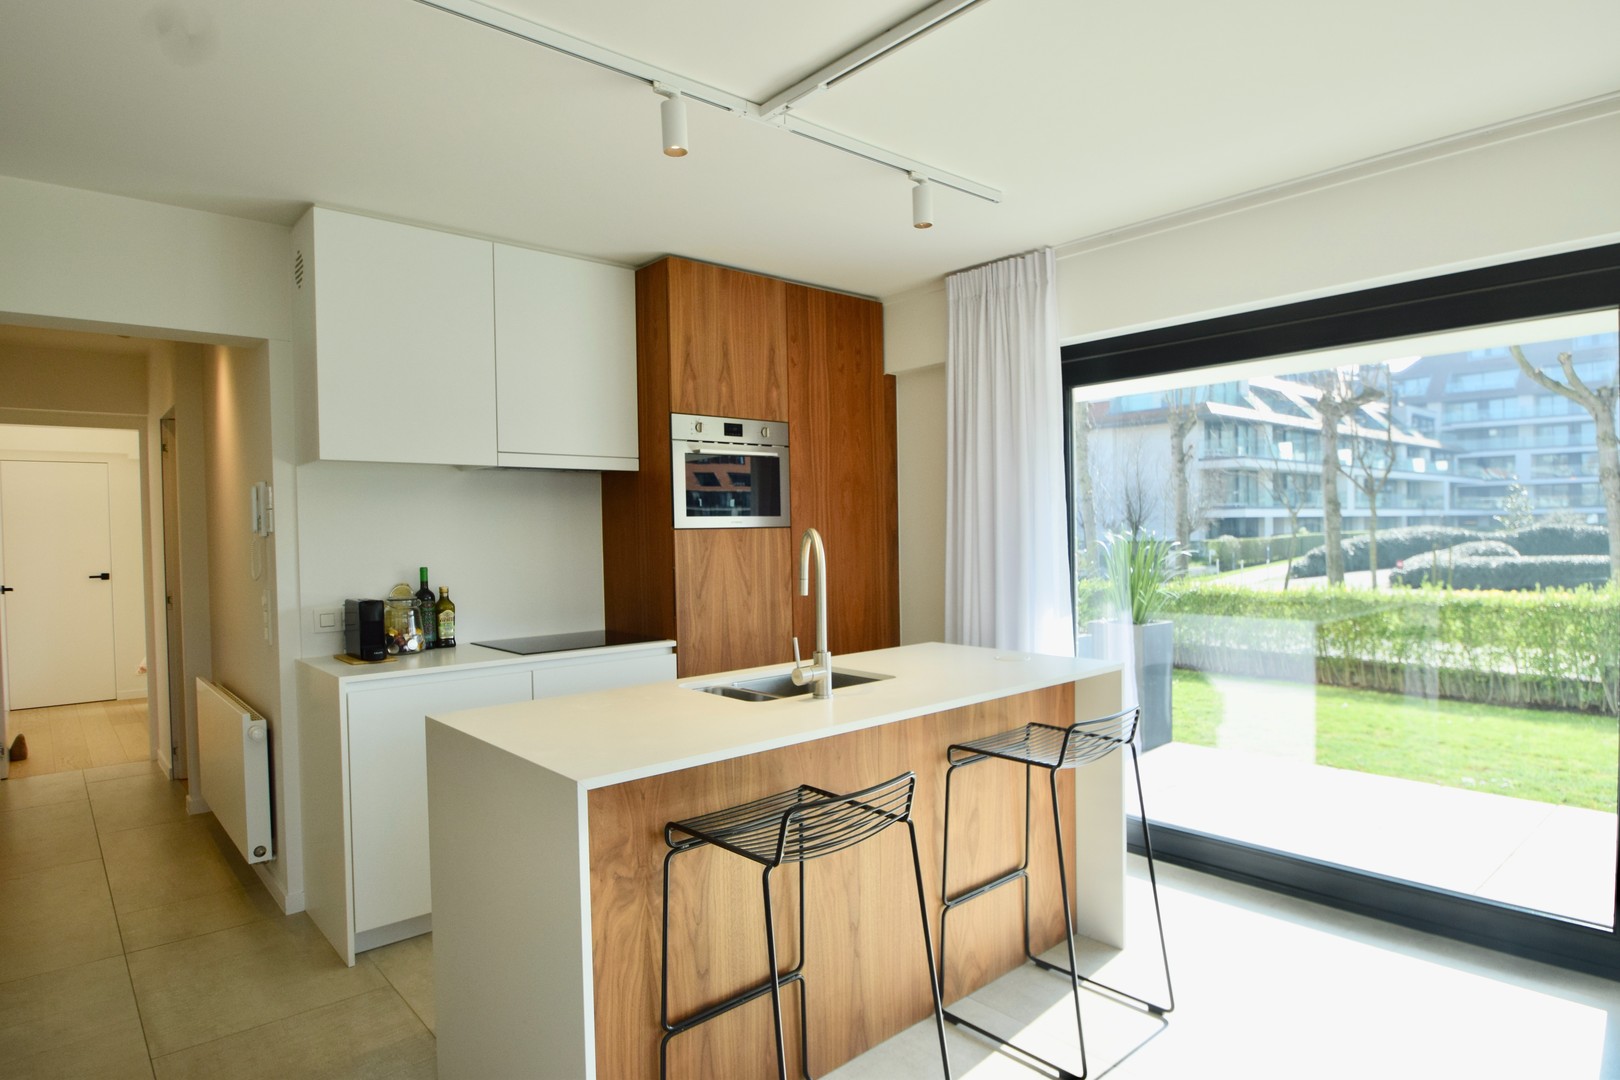 Te koop Knokke Real Estate - Prachtig hoekappartement - keuken